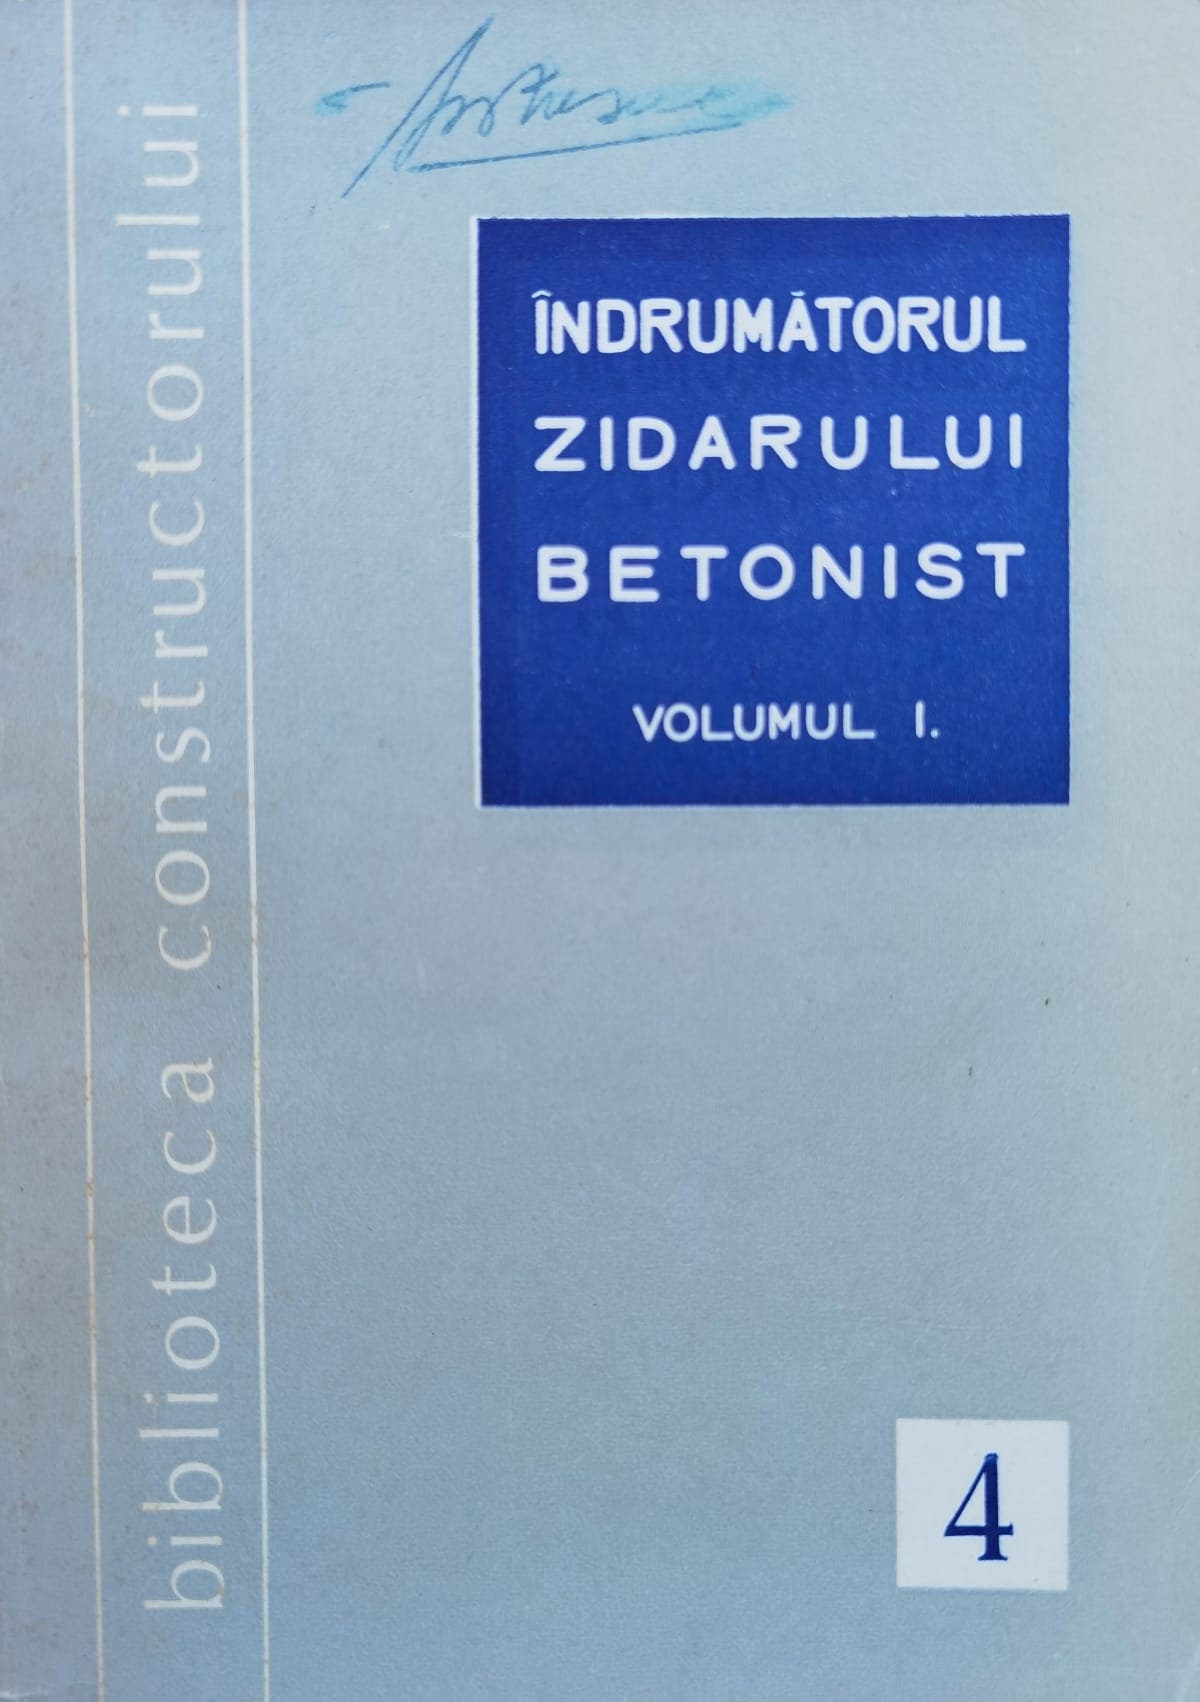 indrumatorul zidarului betonist vol.1                                                                c. rosoga i. davidescu                                                                              